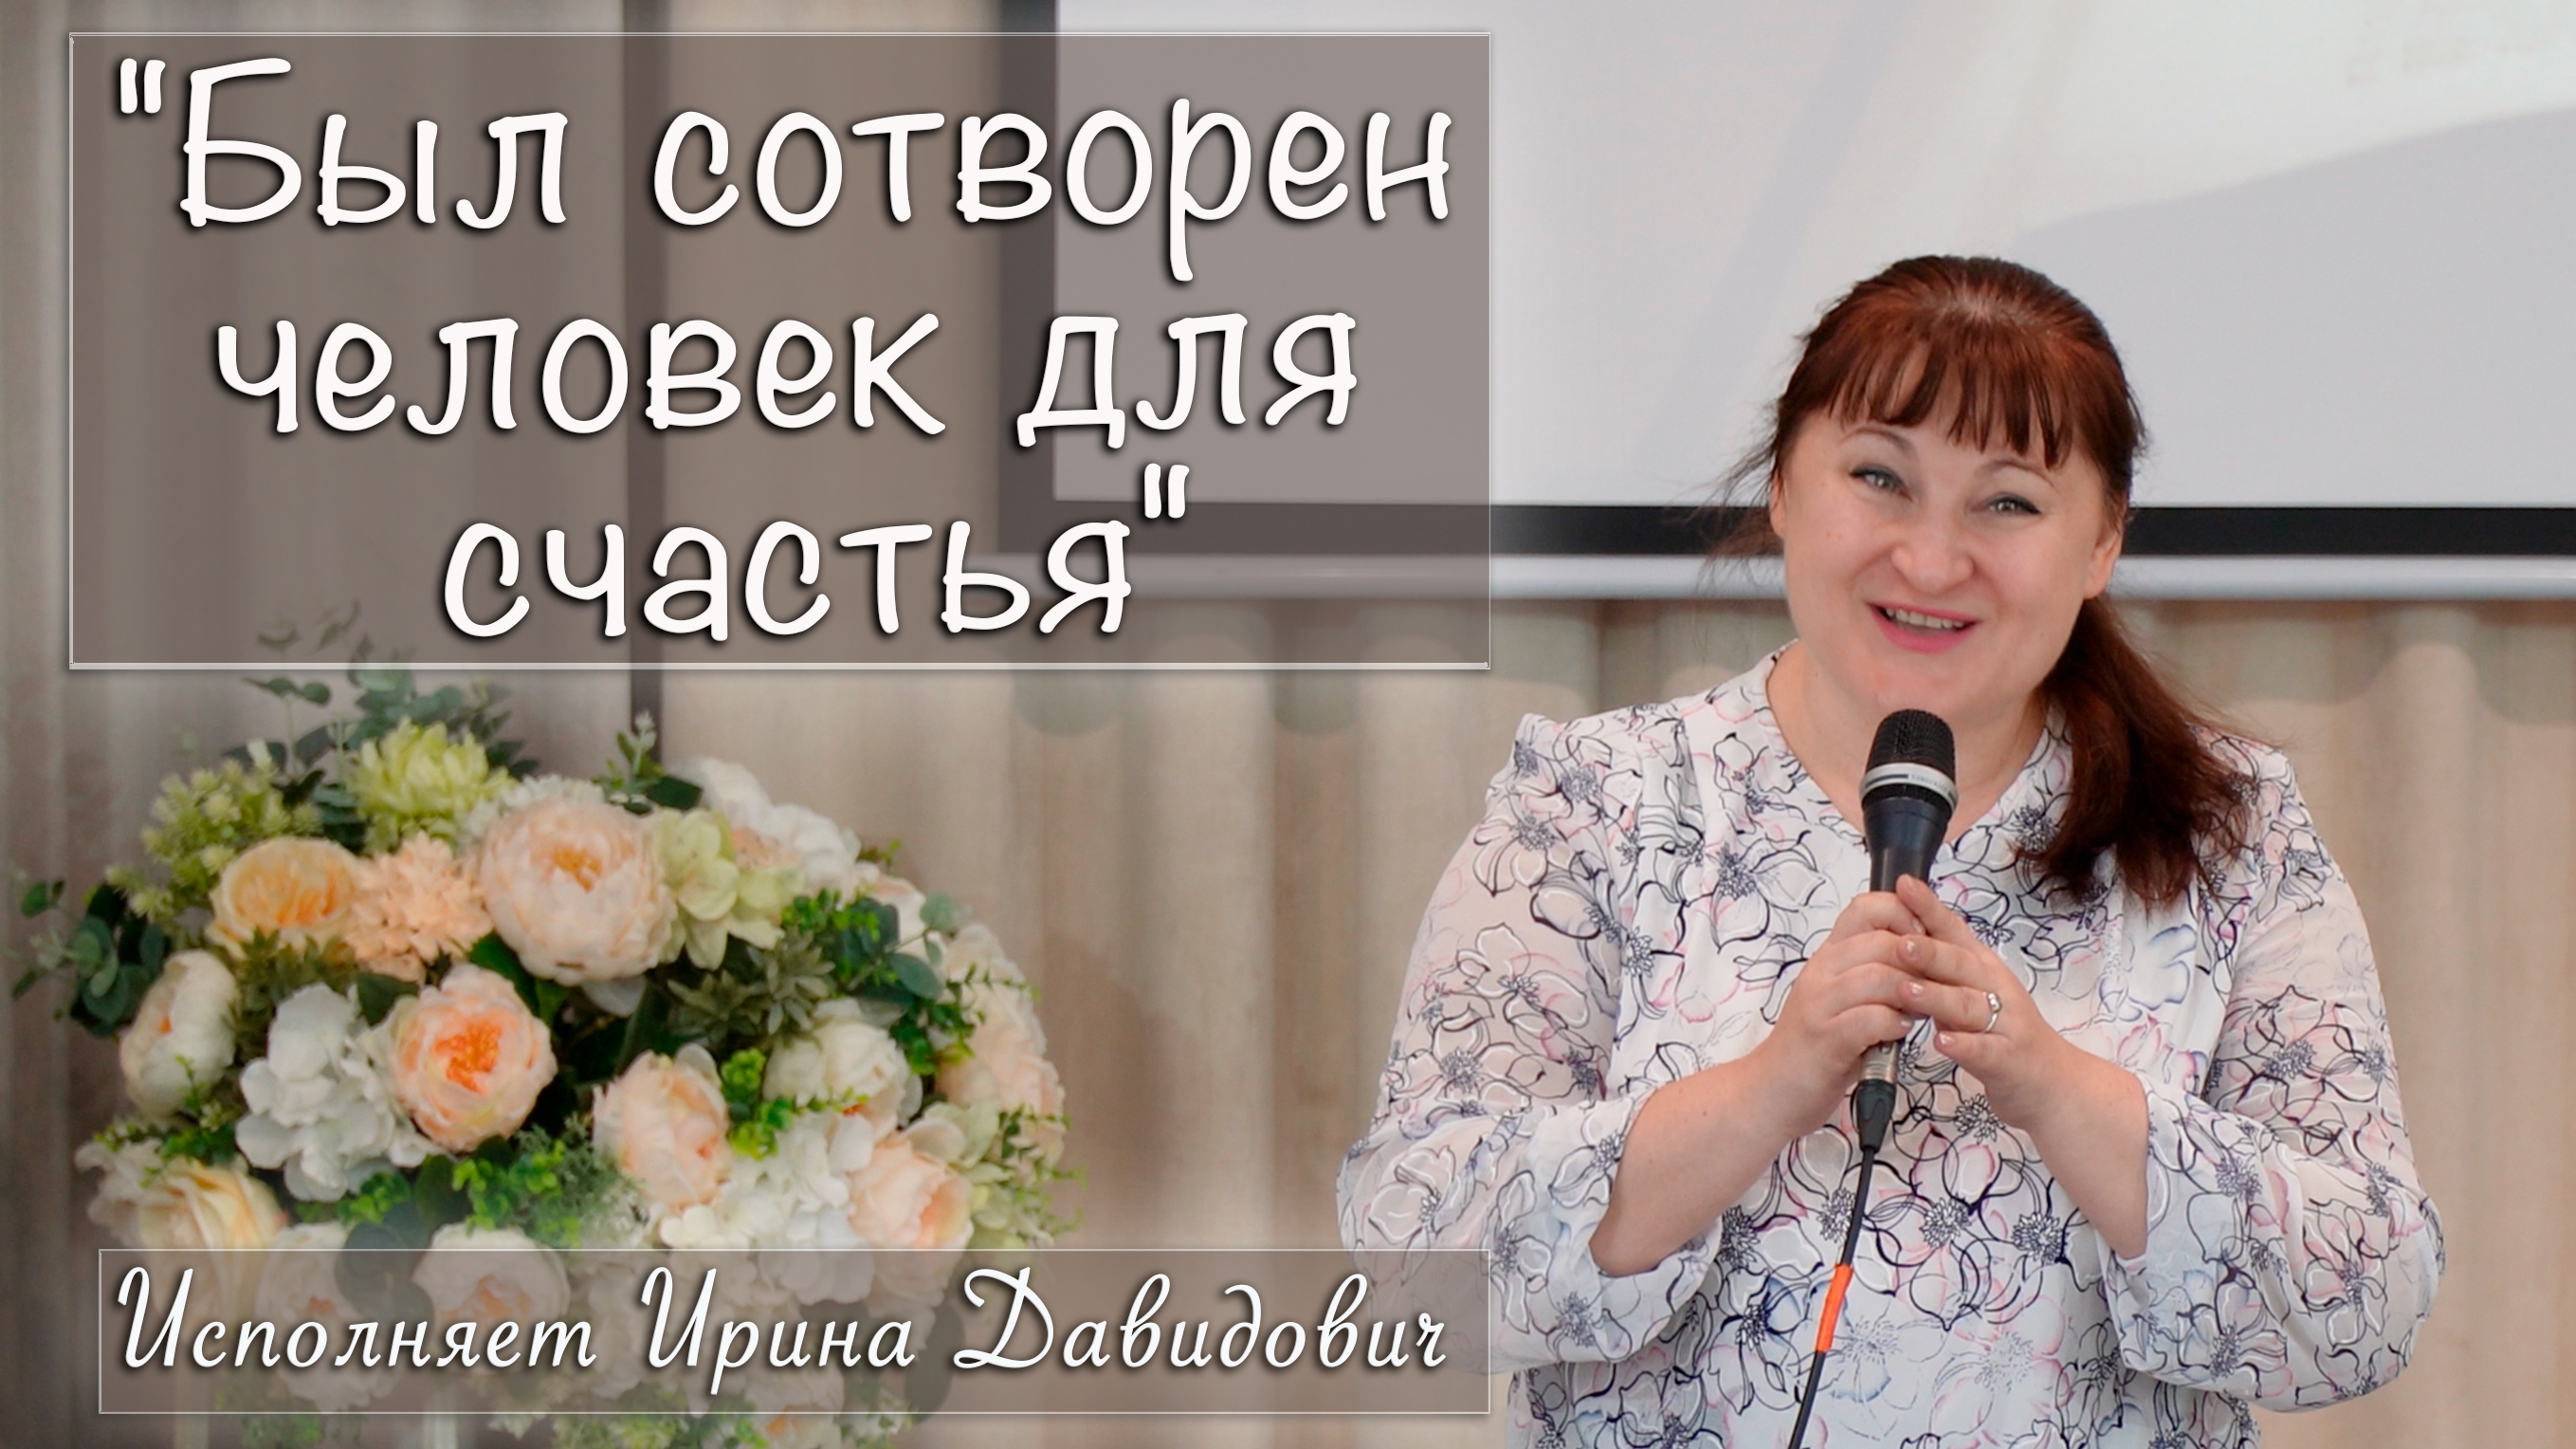 "Был сотворен человек для счастья" исполняет Ирина Давидович